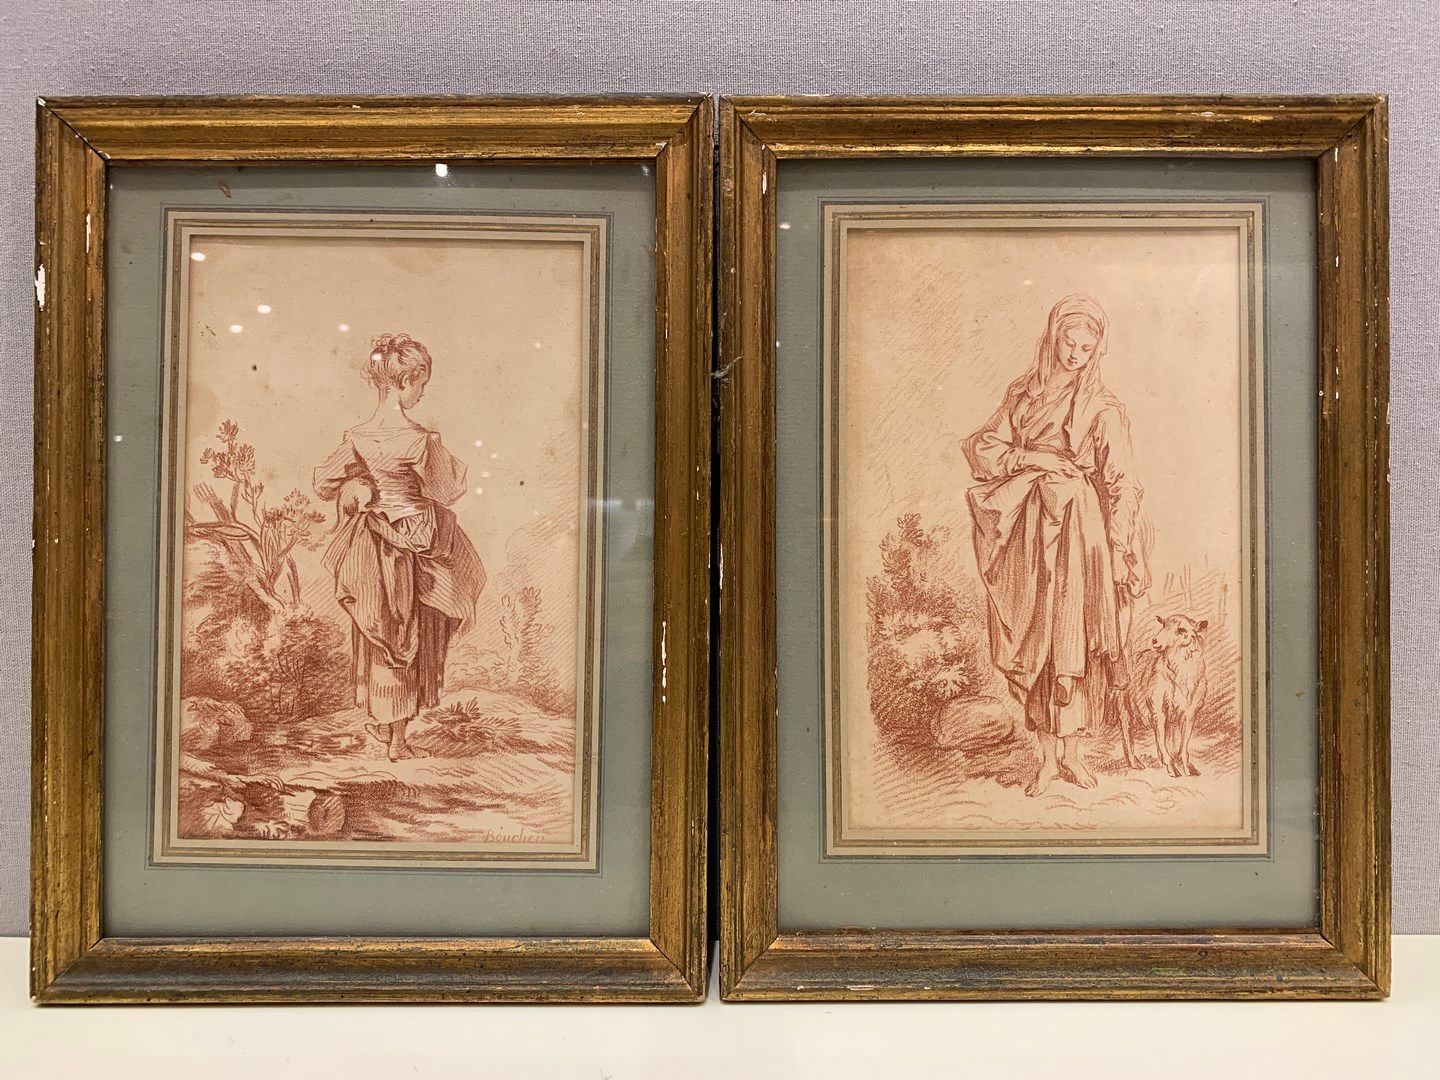 Null 在让-弗朗索瓦-布歇之后的一对版画，其中一幅从后面表现了一个牧羊女和一个女孩。

视线尺寸：21,5 x 14 cm